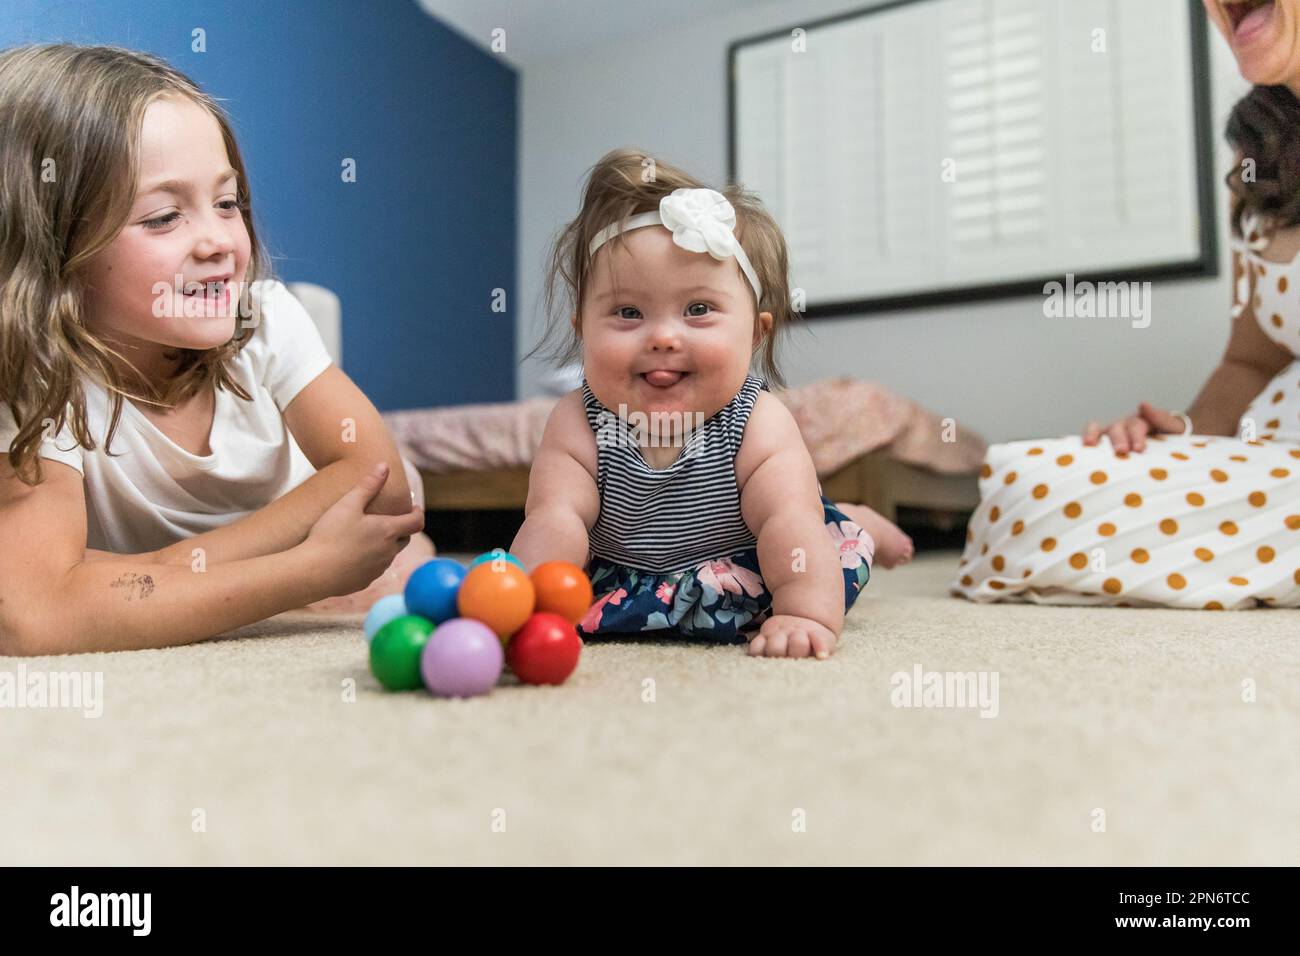 Bébé heureux avec le syndrome de Down jouant à l'intérieur Banque D'Images